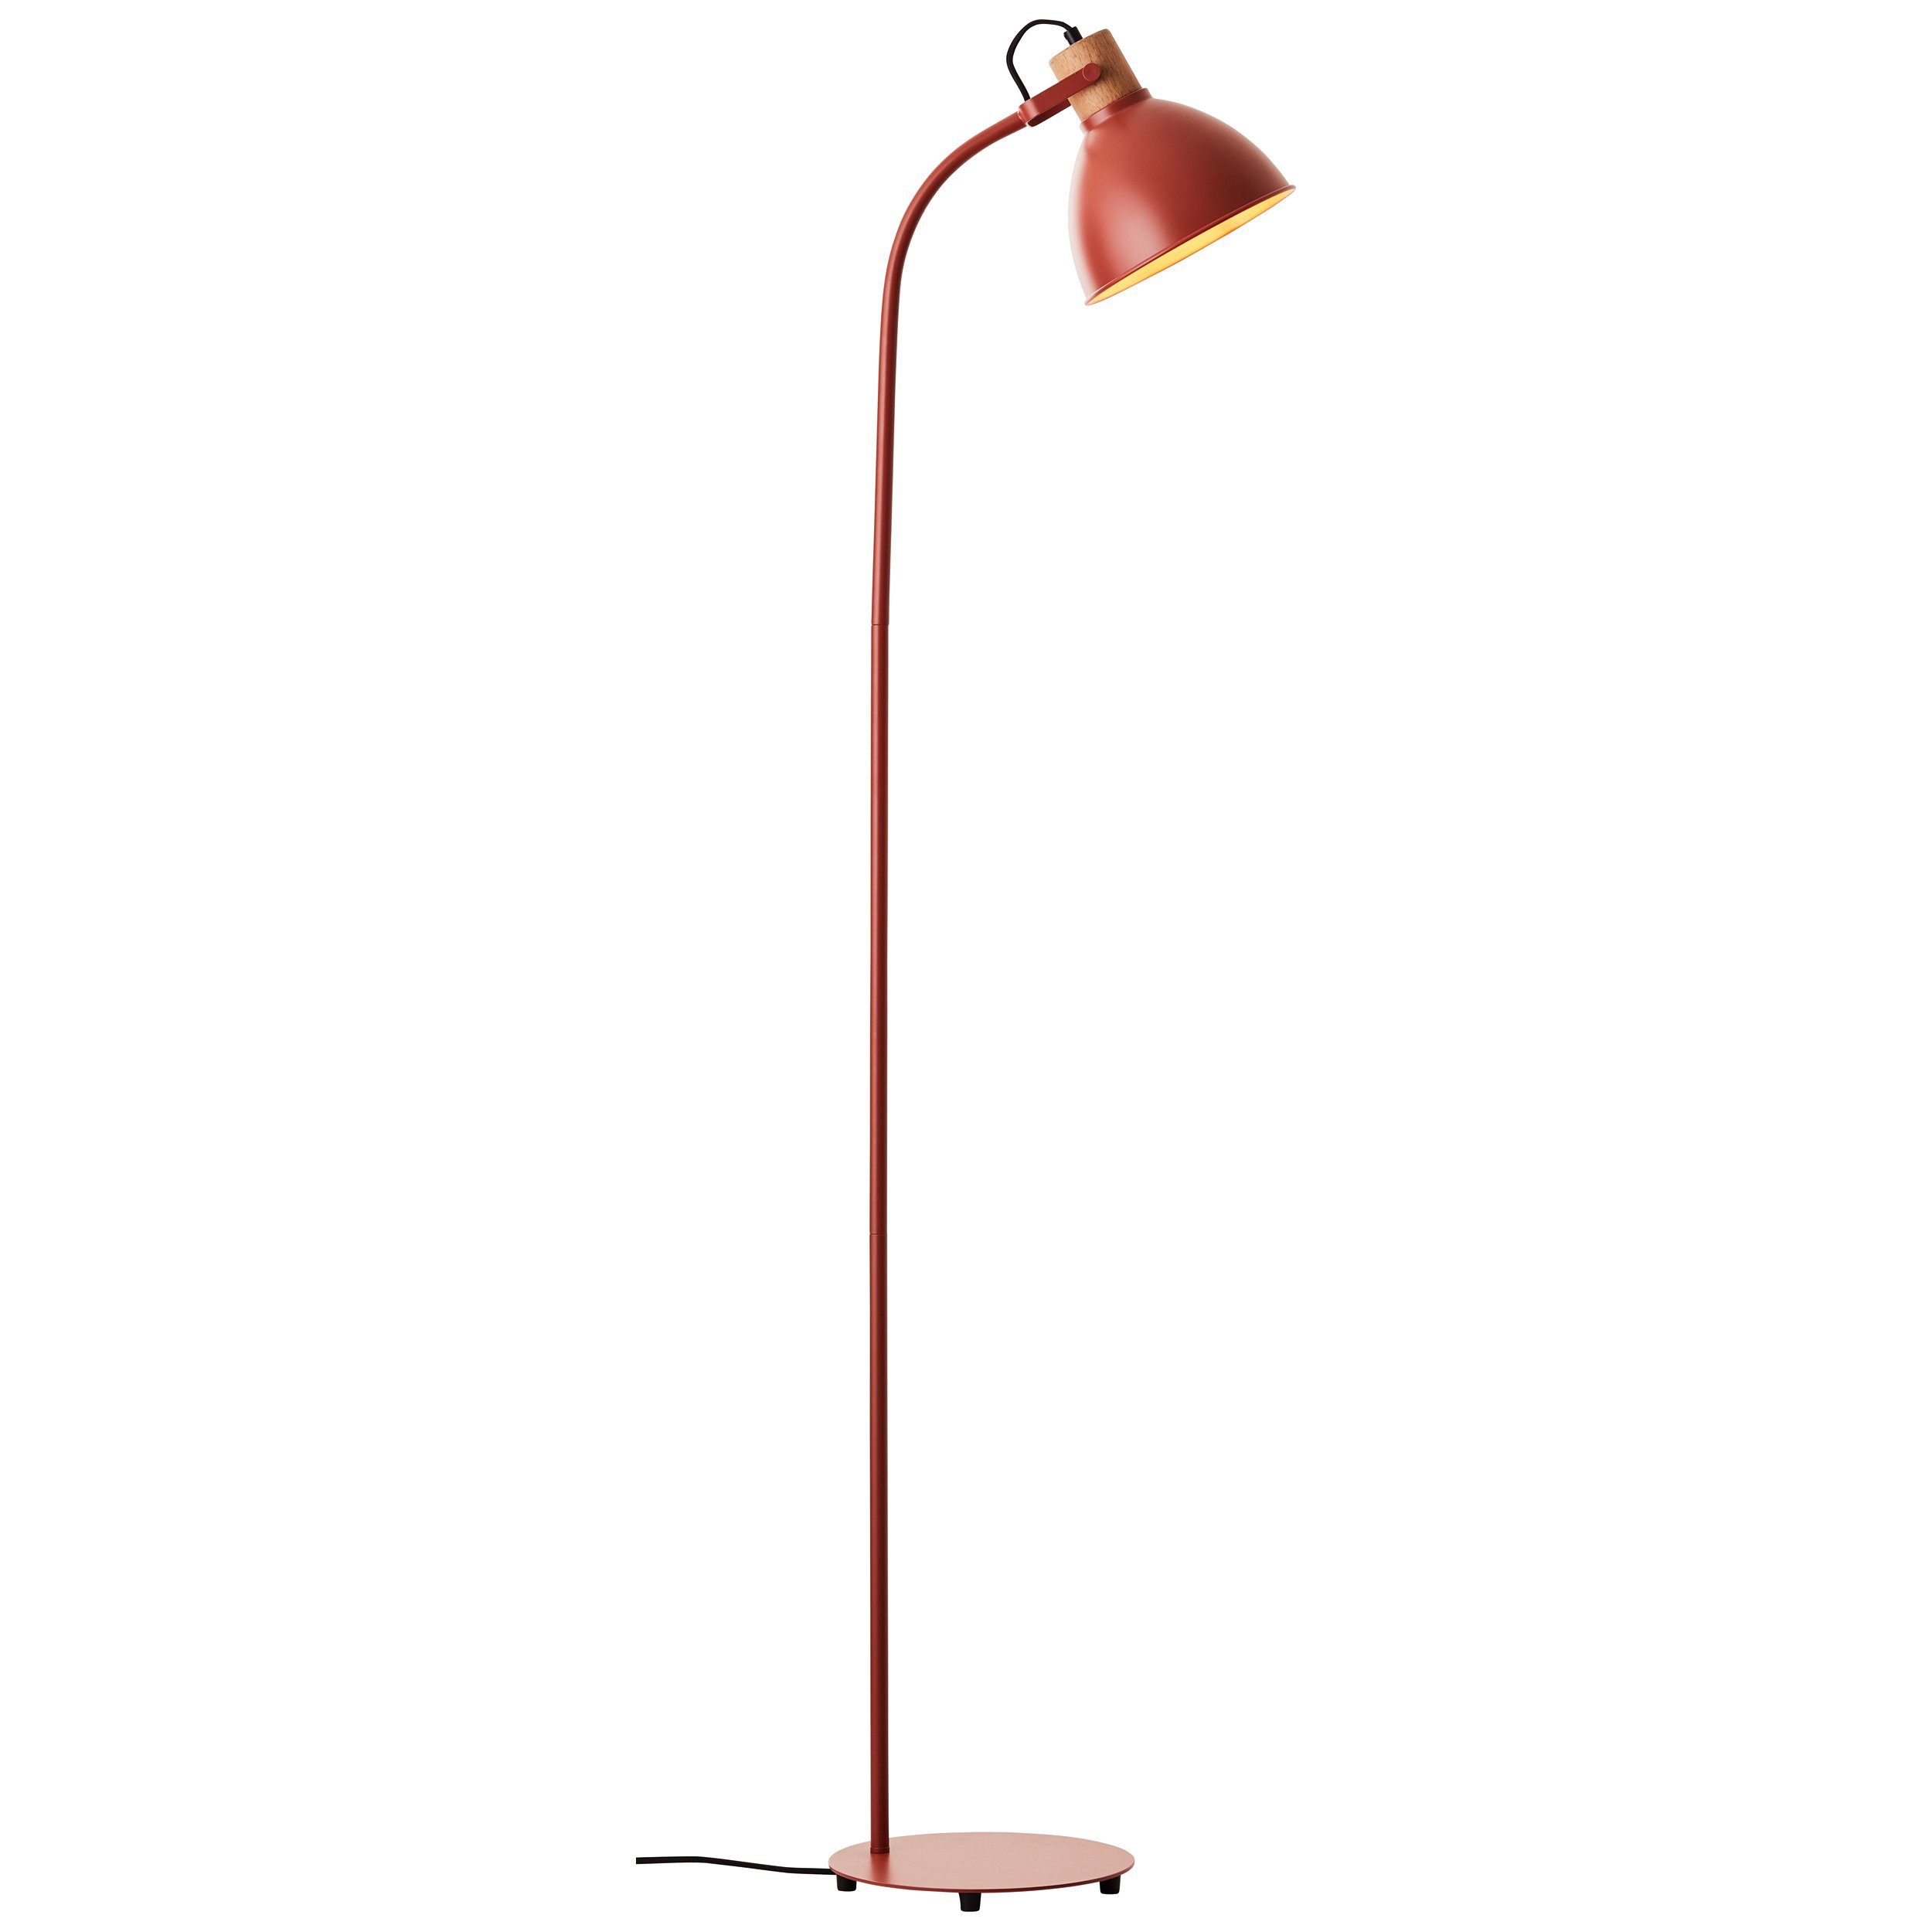 neuer Einkauf Brilliant Stehlampe Erena Standleuchte Fußschalter A60, 1,5m 1x 40 W Erena rot Metall/Holz E27, Standleuchte 1,5m rot